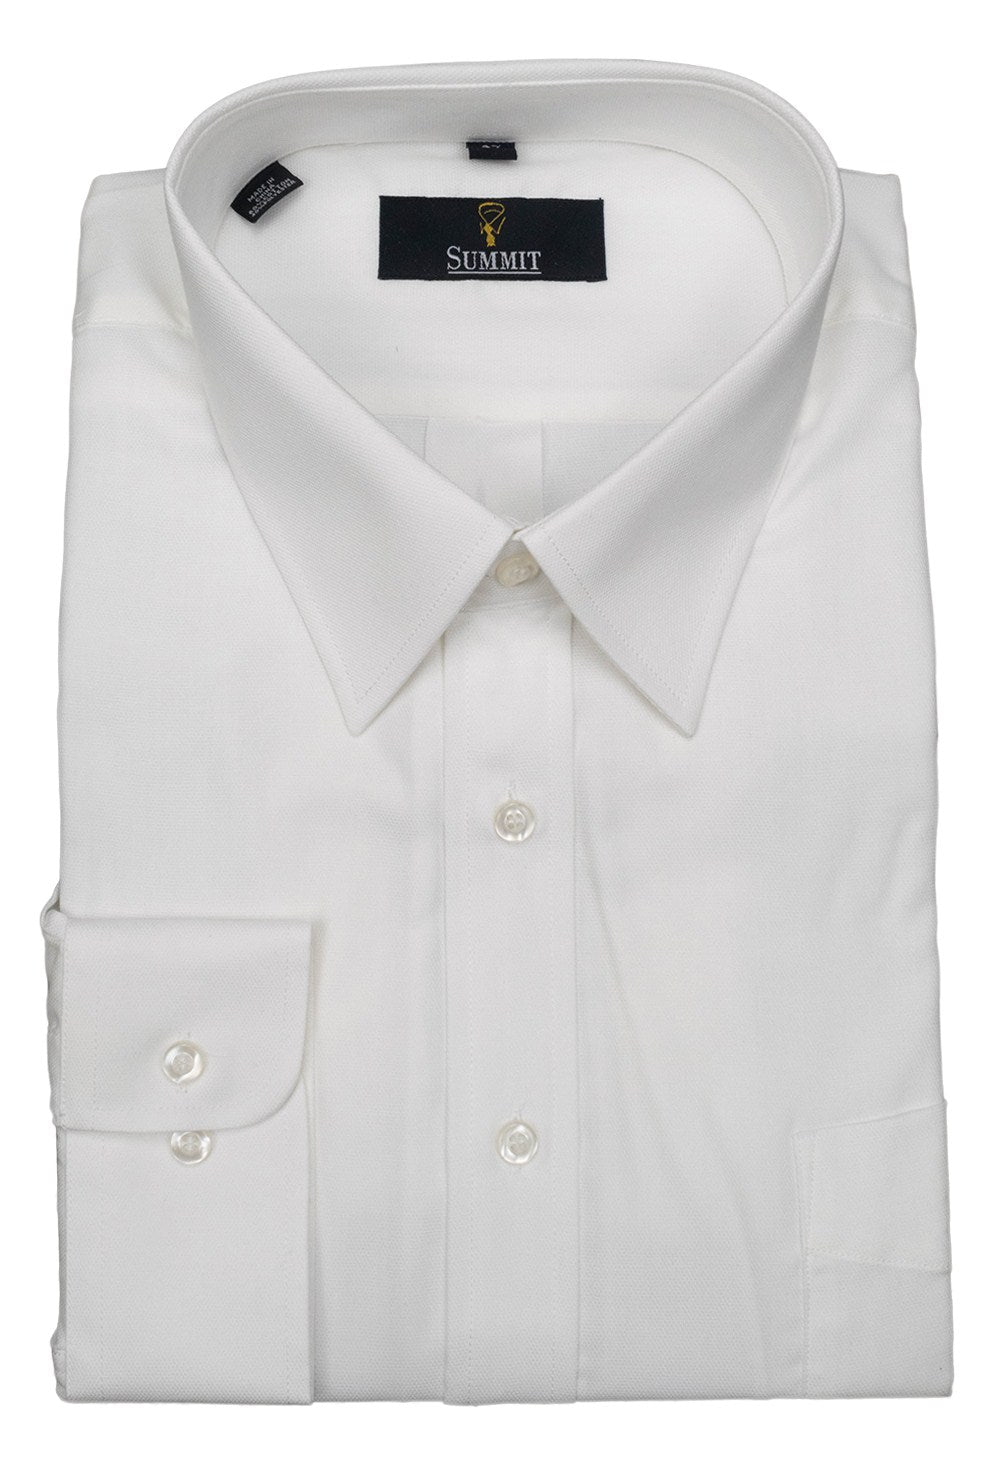 Black Label 22923 Shirt - Thomson's Suits Ltd - 14 Blue - 41 - 29168